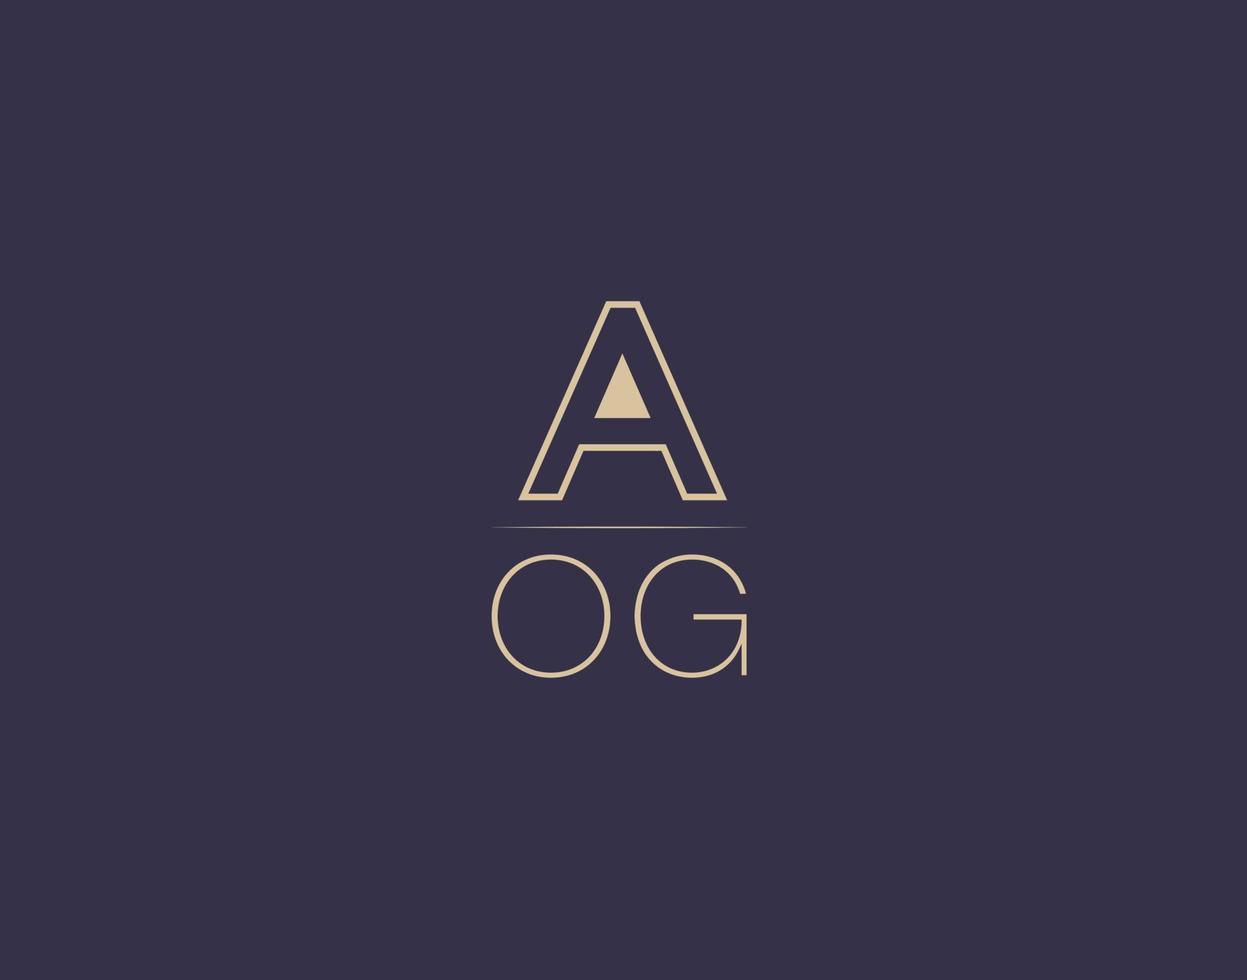 aog lettera logo design moderno minimalista vettore immagini